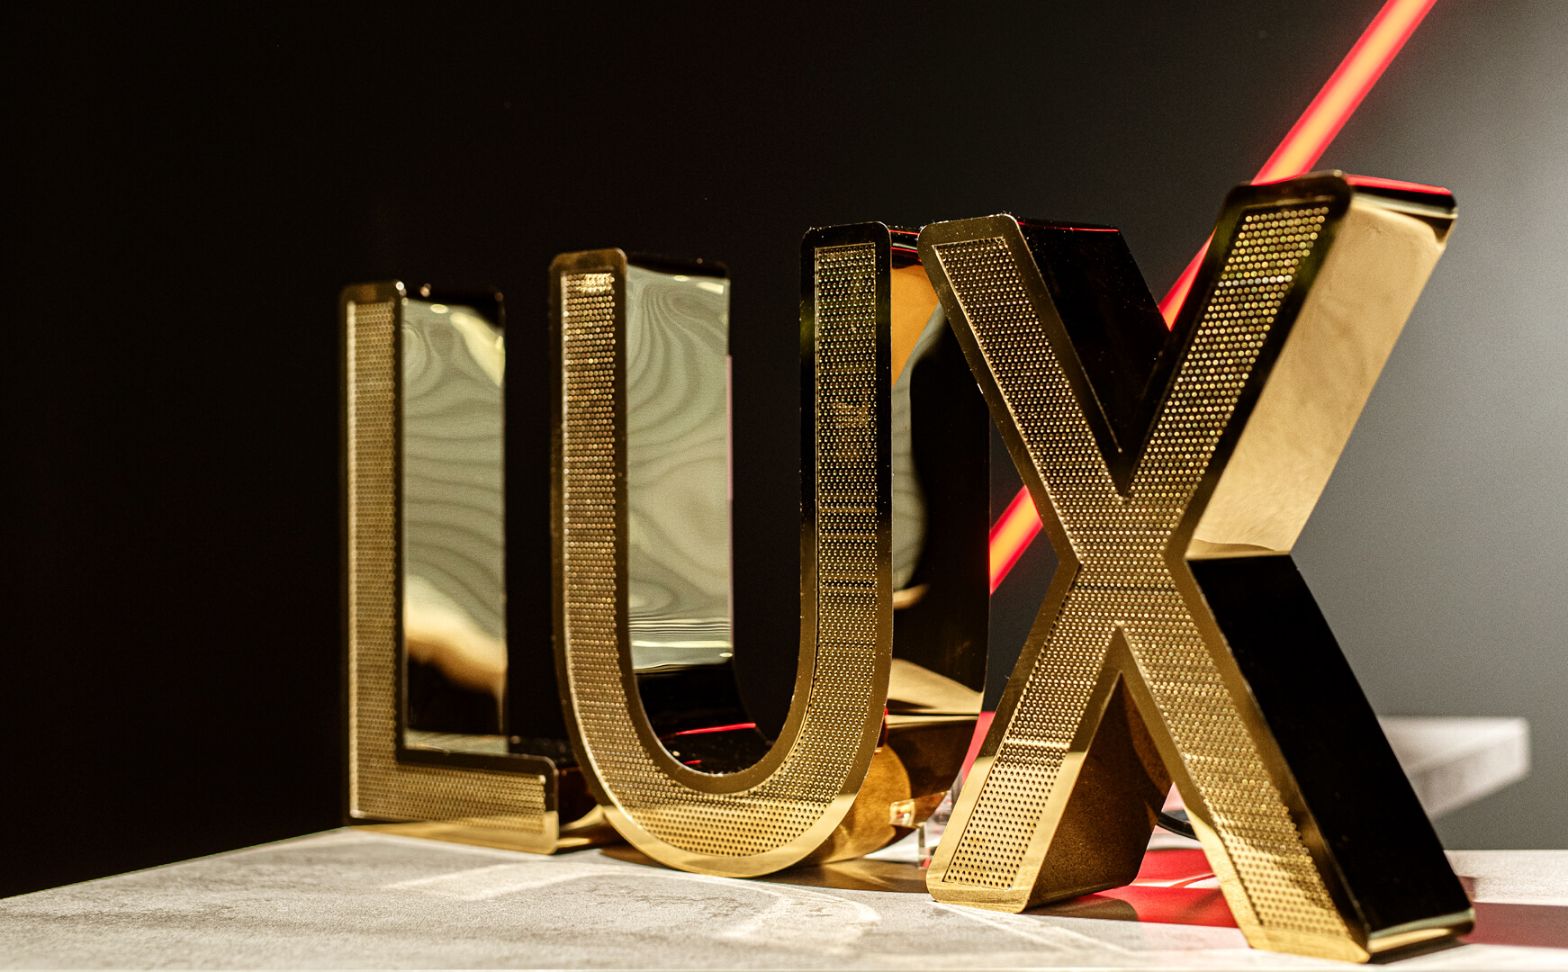 Lettere in acciaio inox perforato LUX - Lettere LUX in acciaio inox traforato lucido oro nello showroom Mercedes